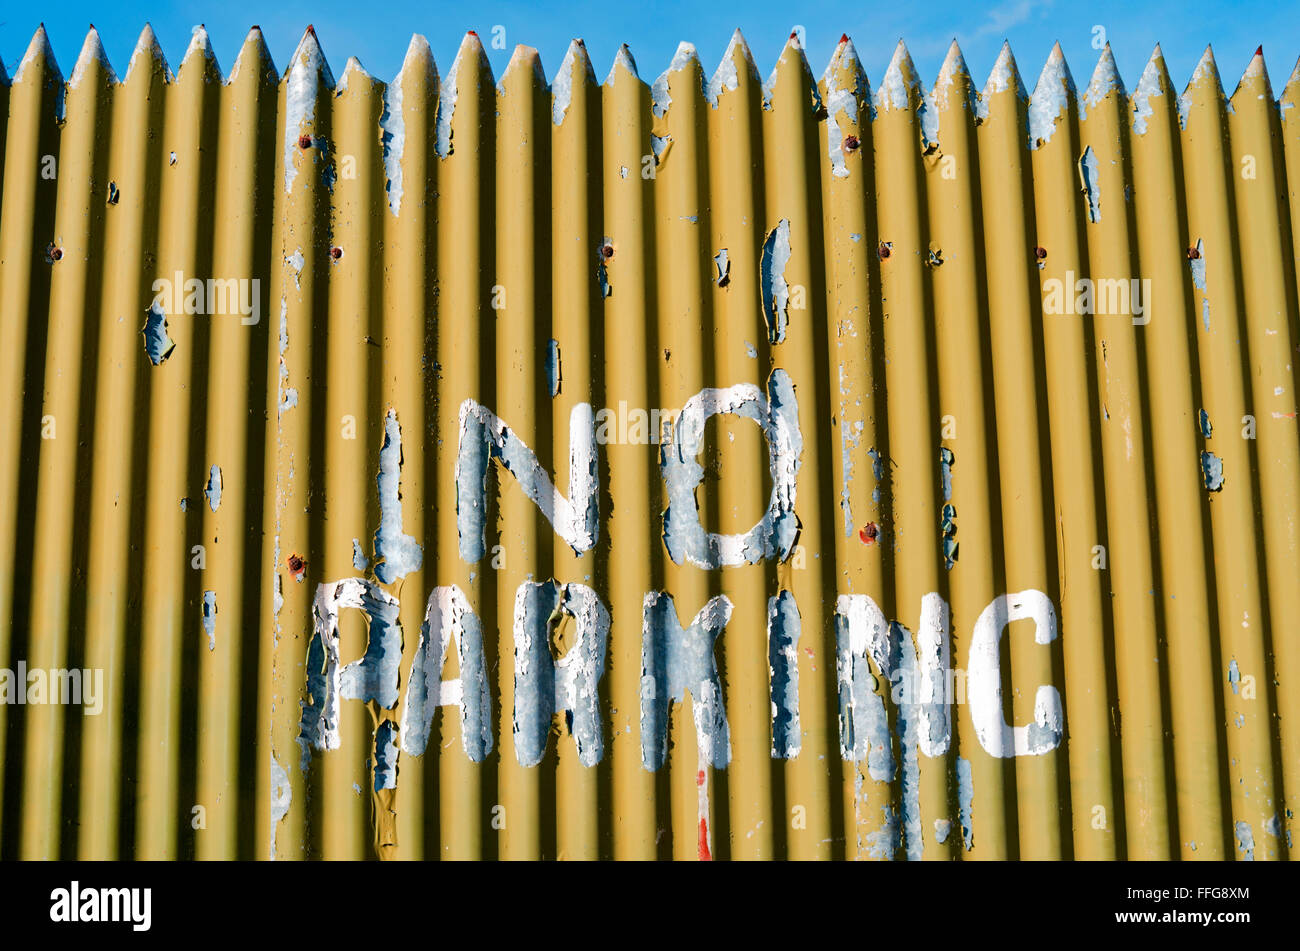 Un livre blanc 'No Parking sign' est peint sur une clôture de fer ondulé jaune. Banque D'Images